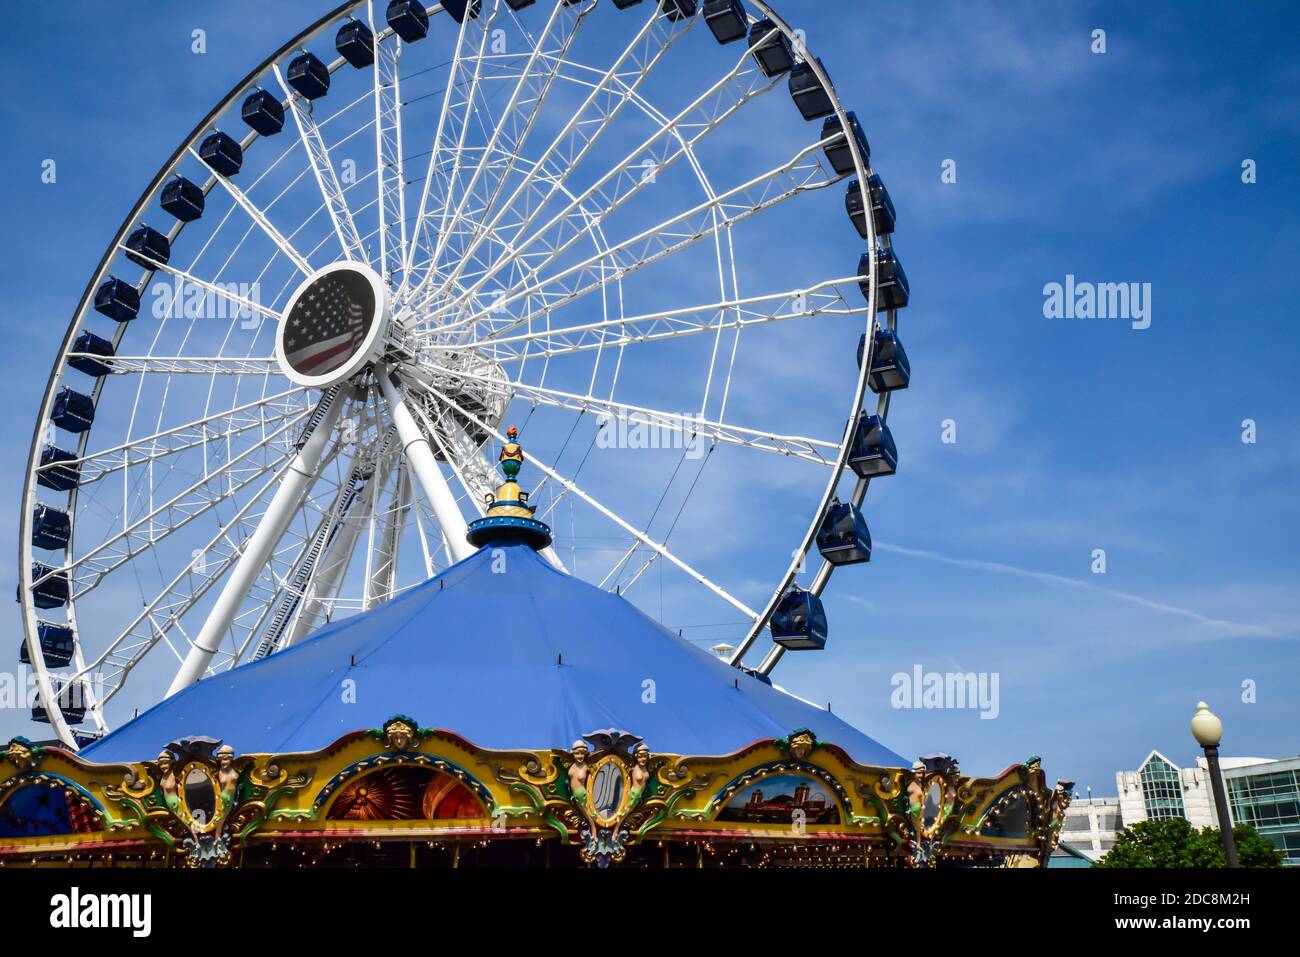 City amusement and entertainment park amusement rides Stock Photo